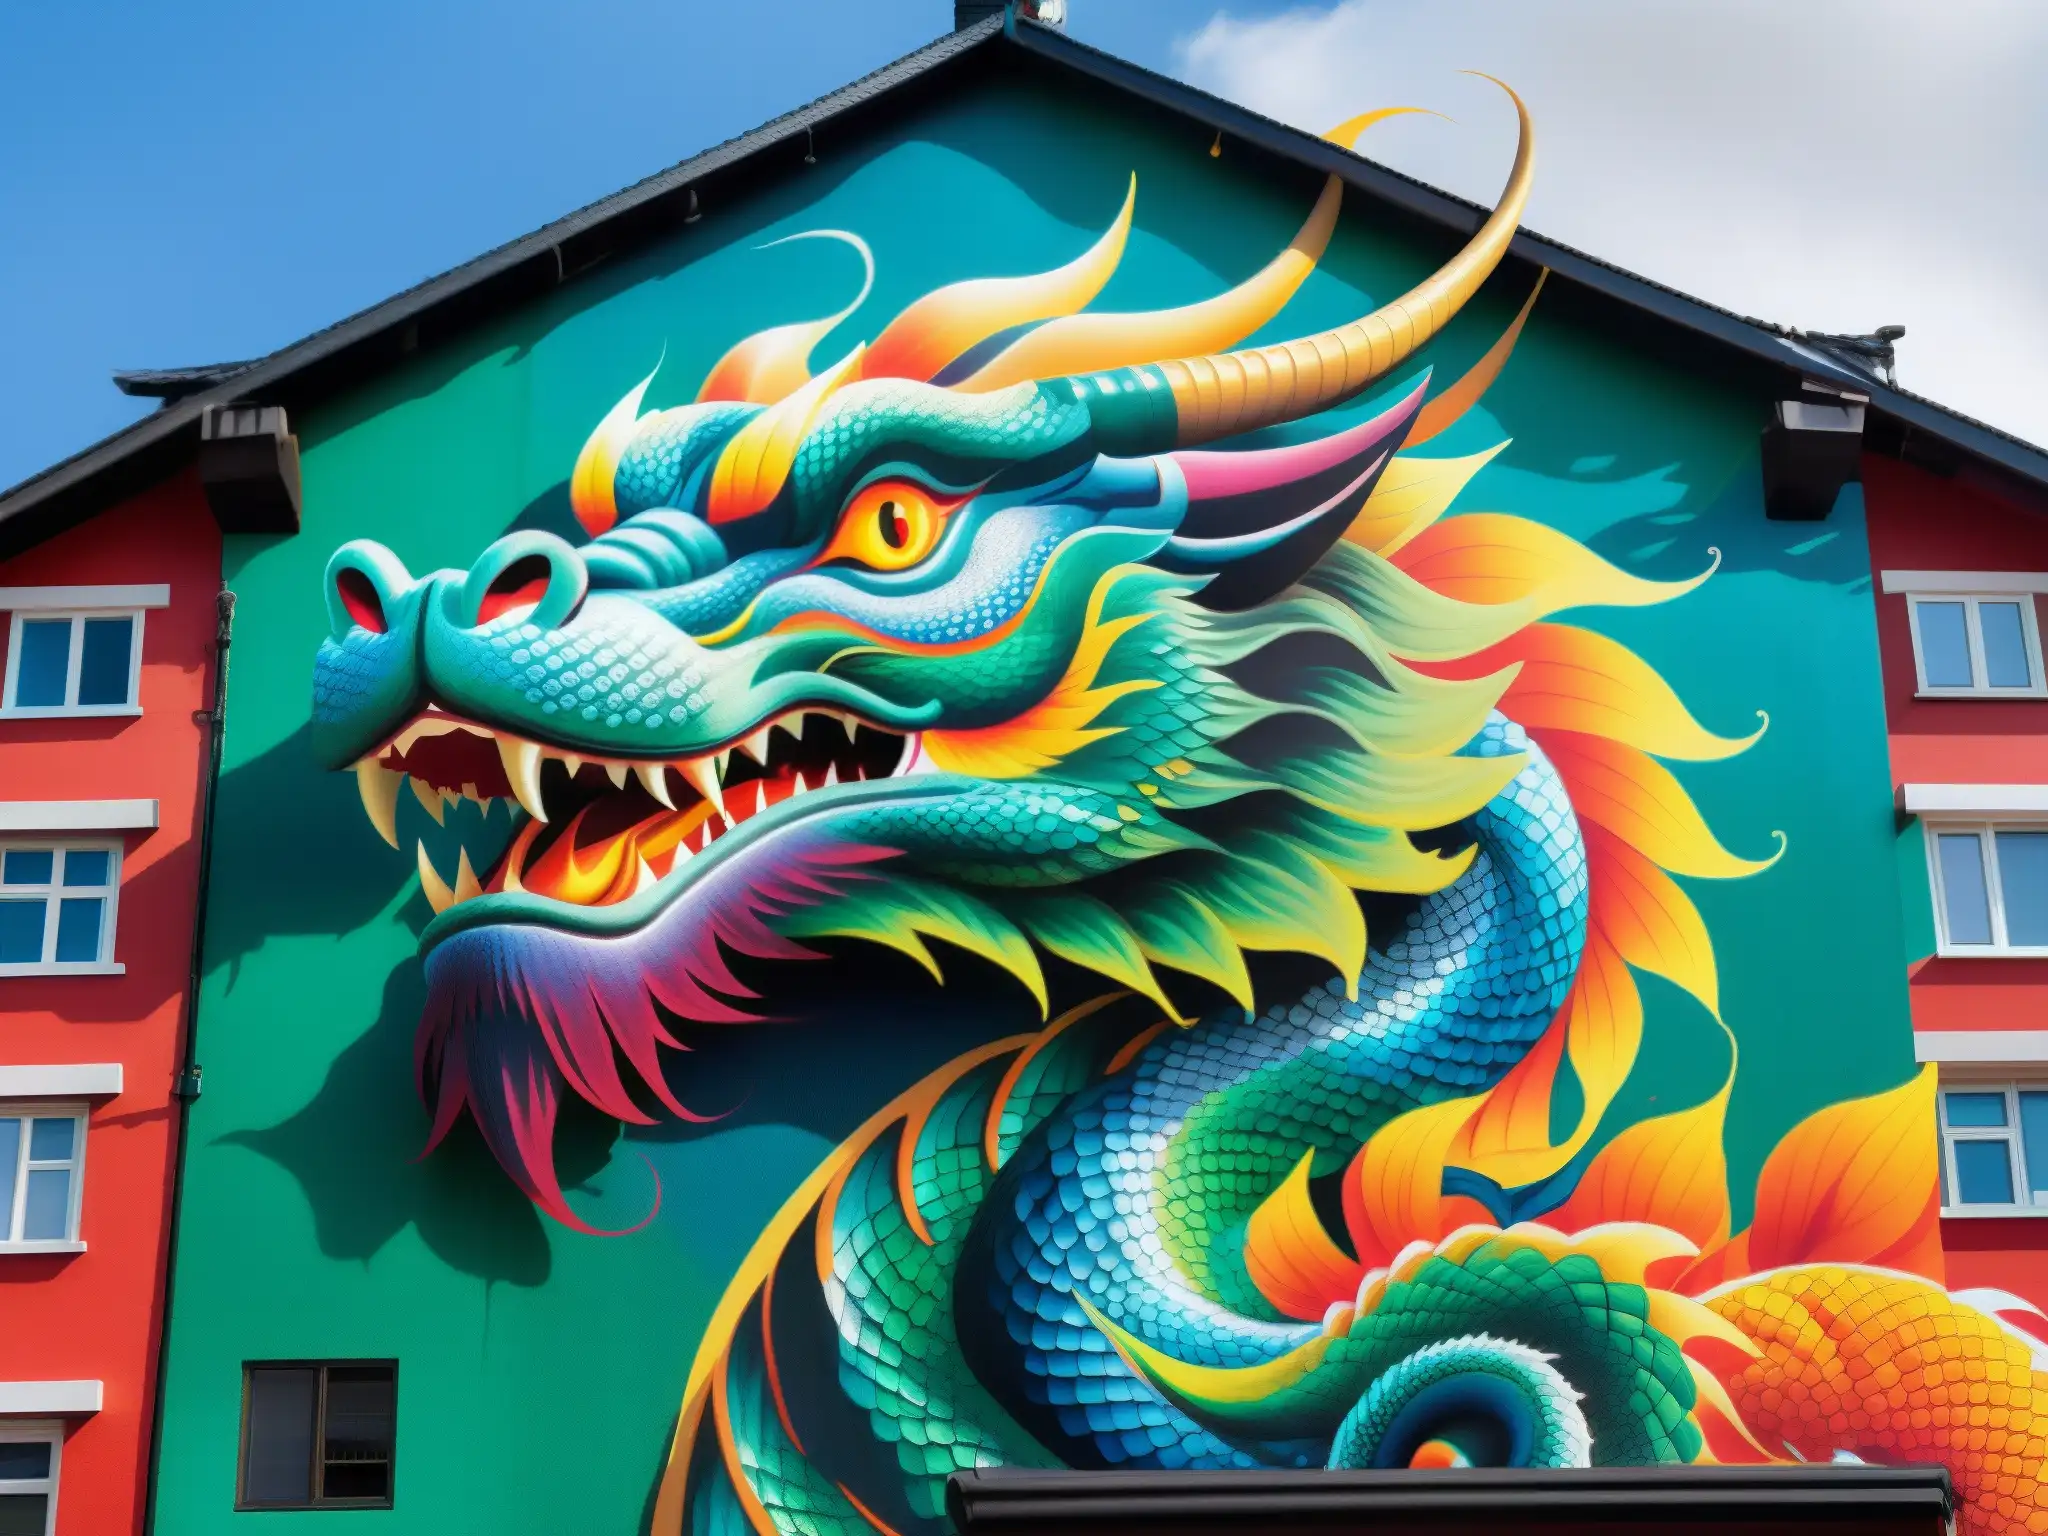 Increíble mural del Dragón de Ryuugujou en la ciudad, reflejando mitología urbana con colores vibrantes y escamas iridiscentes